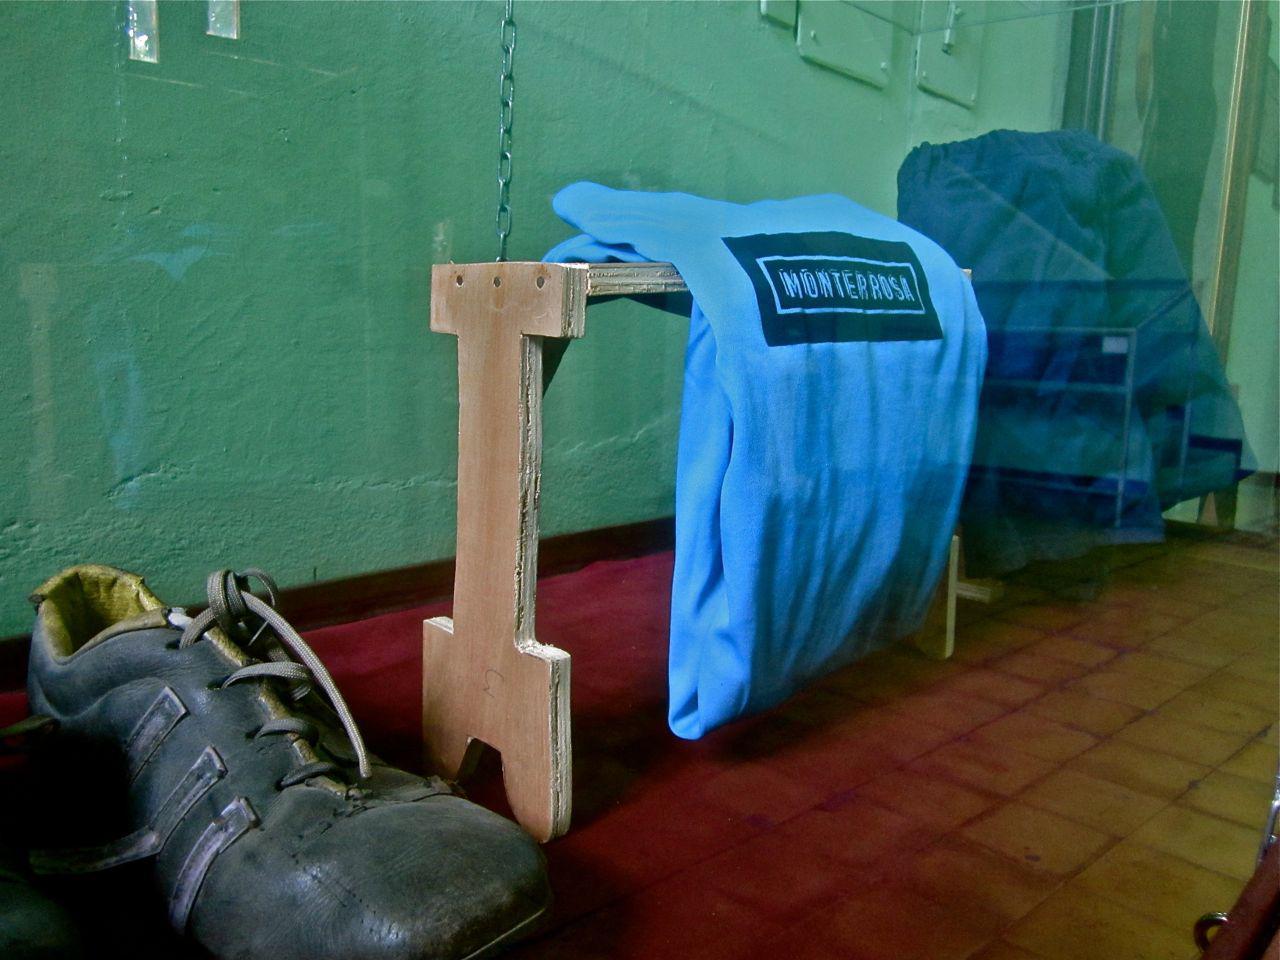 Zapatos y camiseta de ejercicio del Teniente Coronel José Domingo Monterrosa, expuestos en el Museo Militar, Cuartel El Zapote, San Salvador. Monterrosa, comandante del batallón Atlacatl, ha sido señalado como responsable de la masacre del Mozote, cometida en 1981. Foto tomada el 3 de junio de 2012.